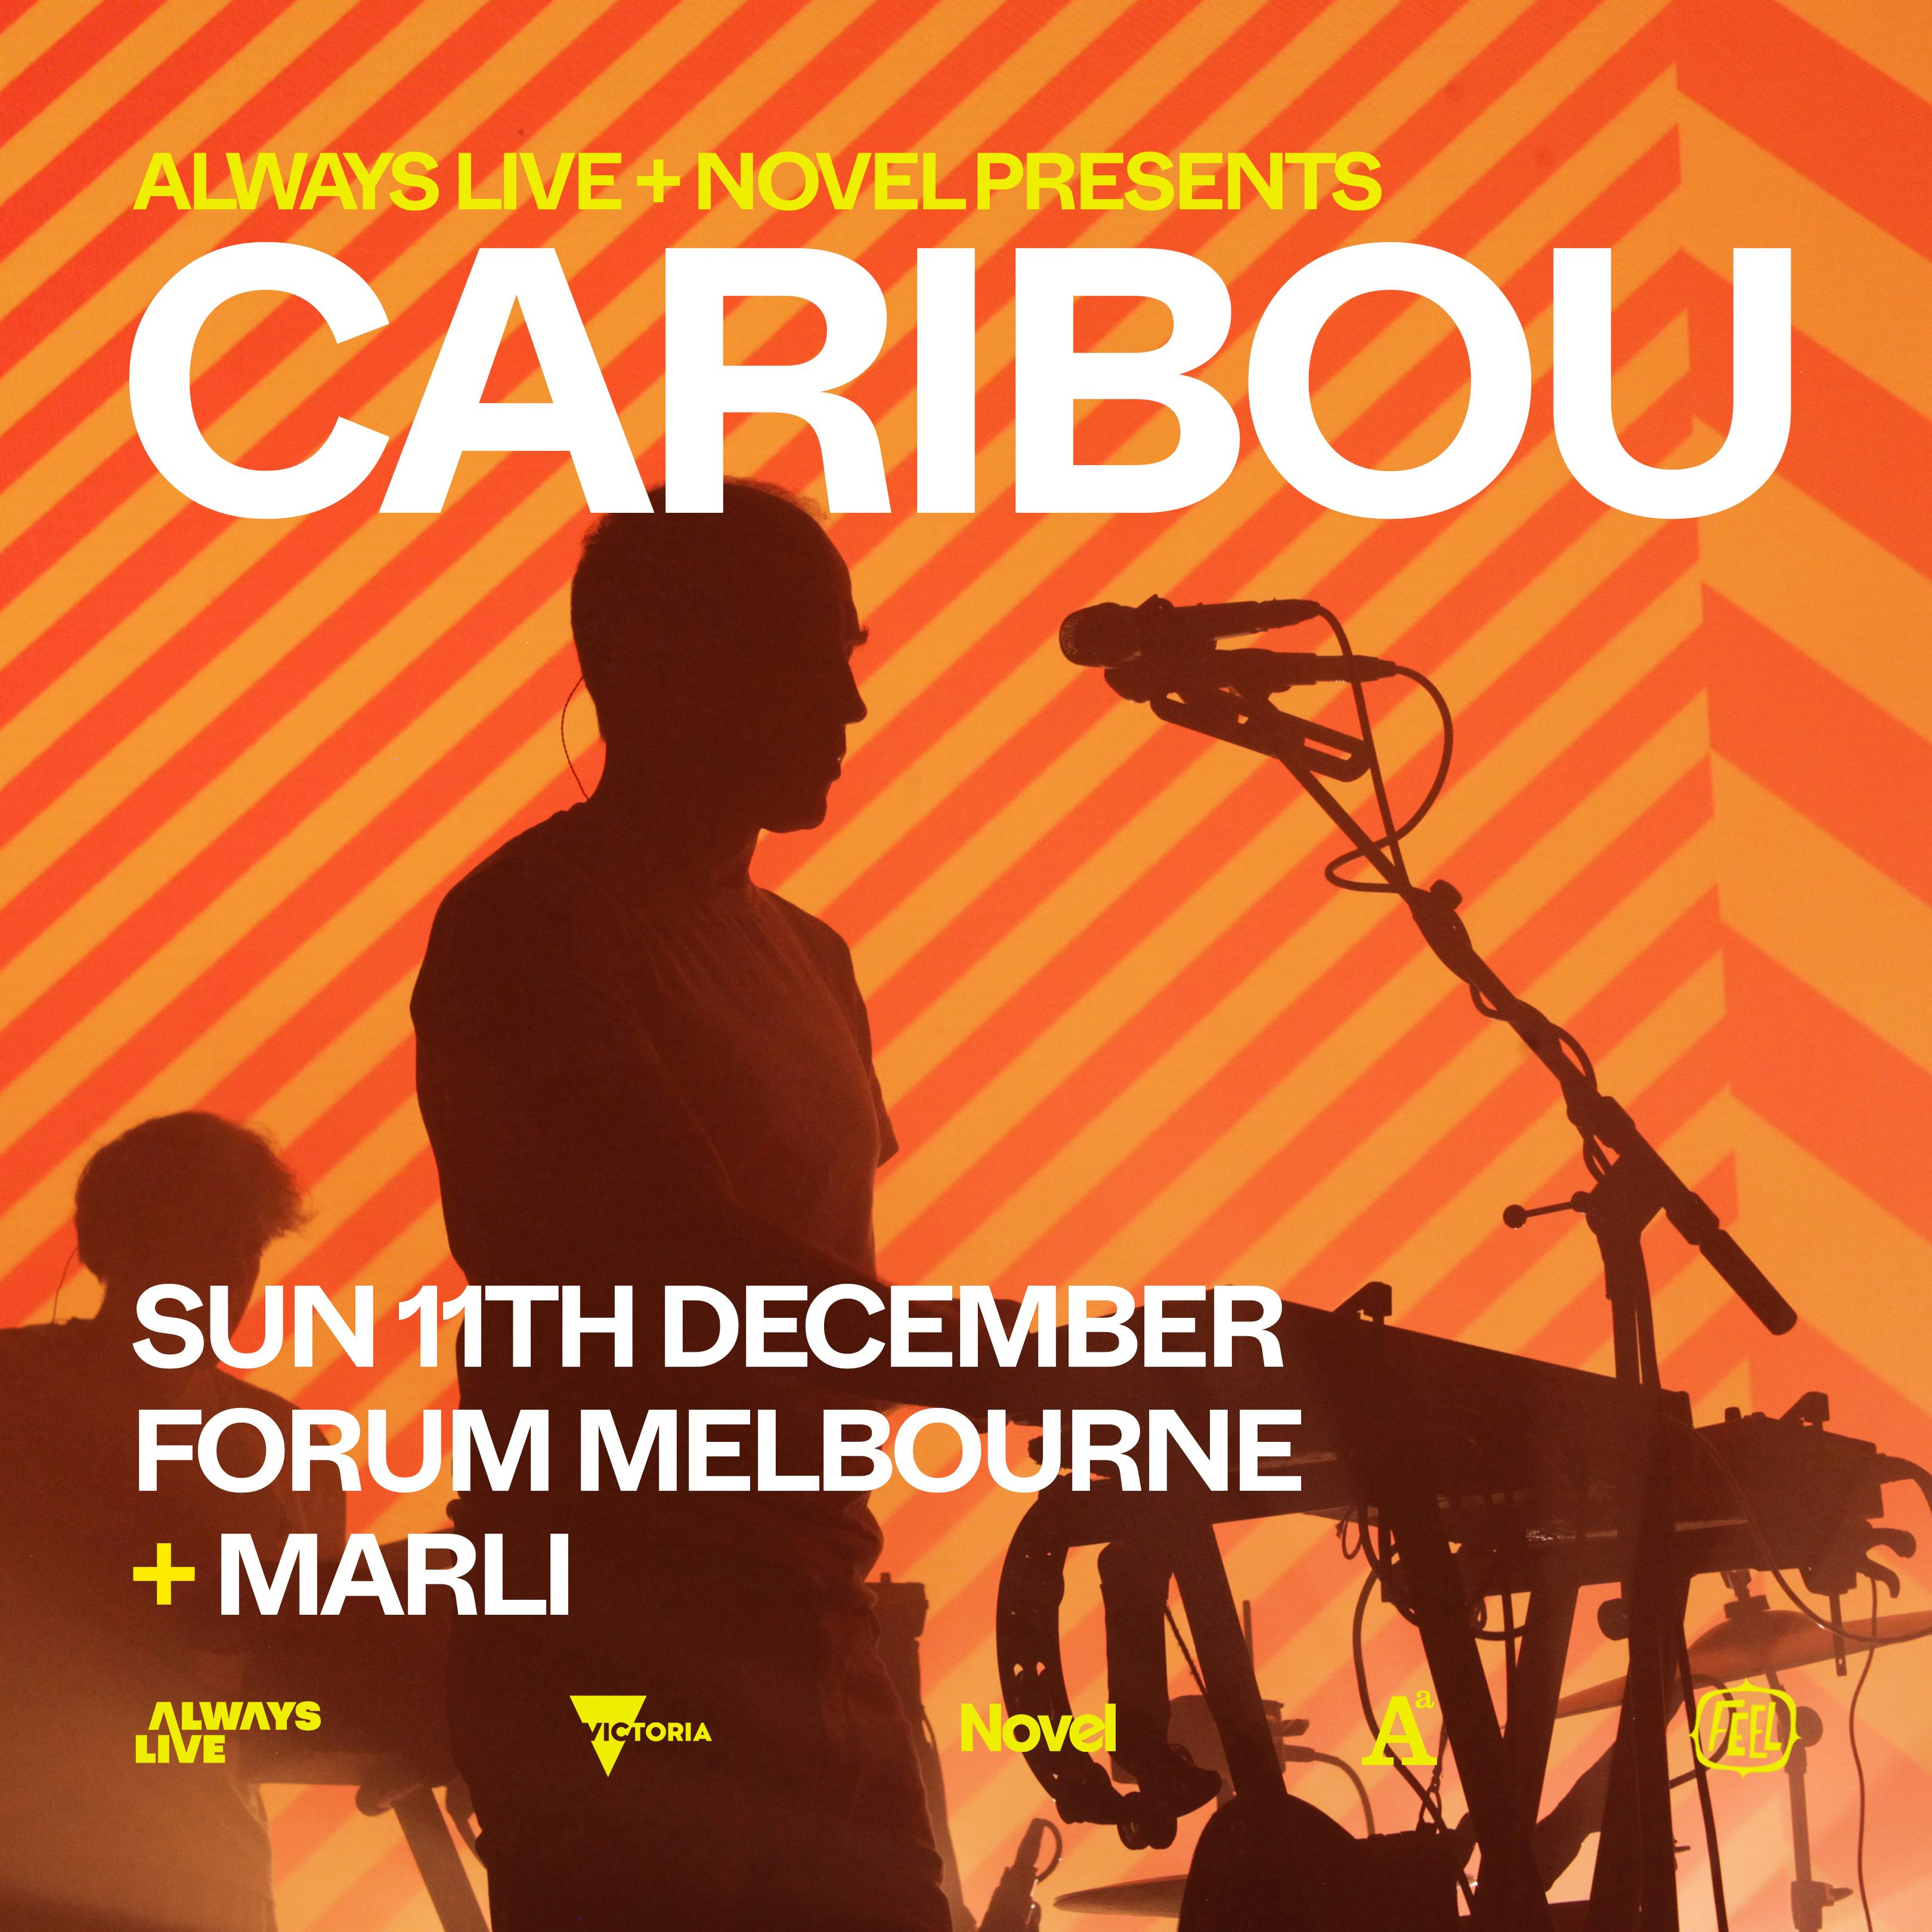 SOLD OUT - ALWAYS LIVE & Novel Present Caribou (Live) - Forum Melbourne